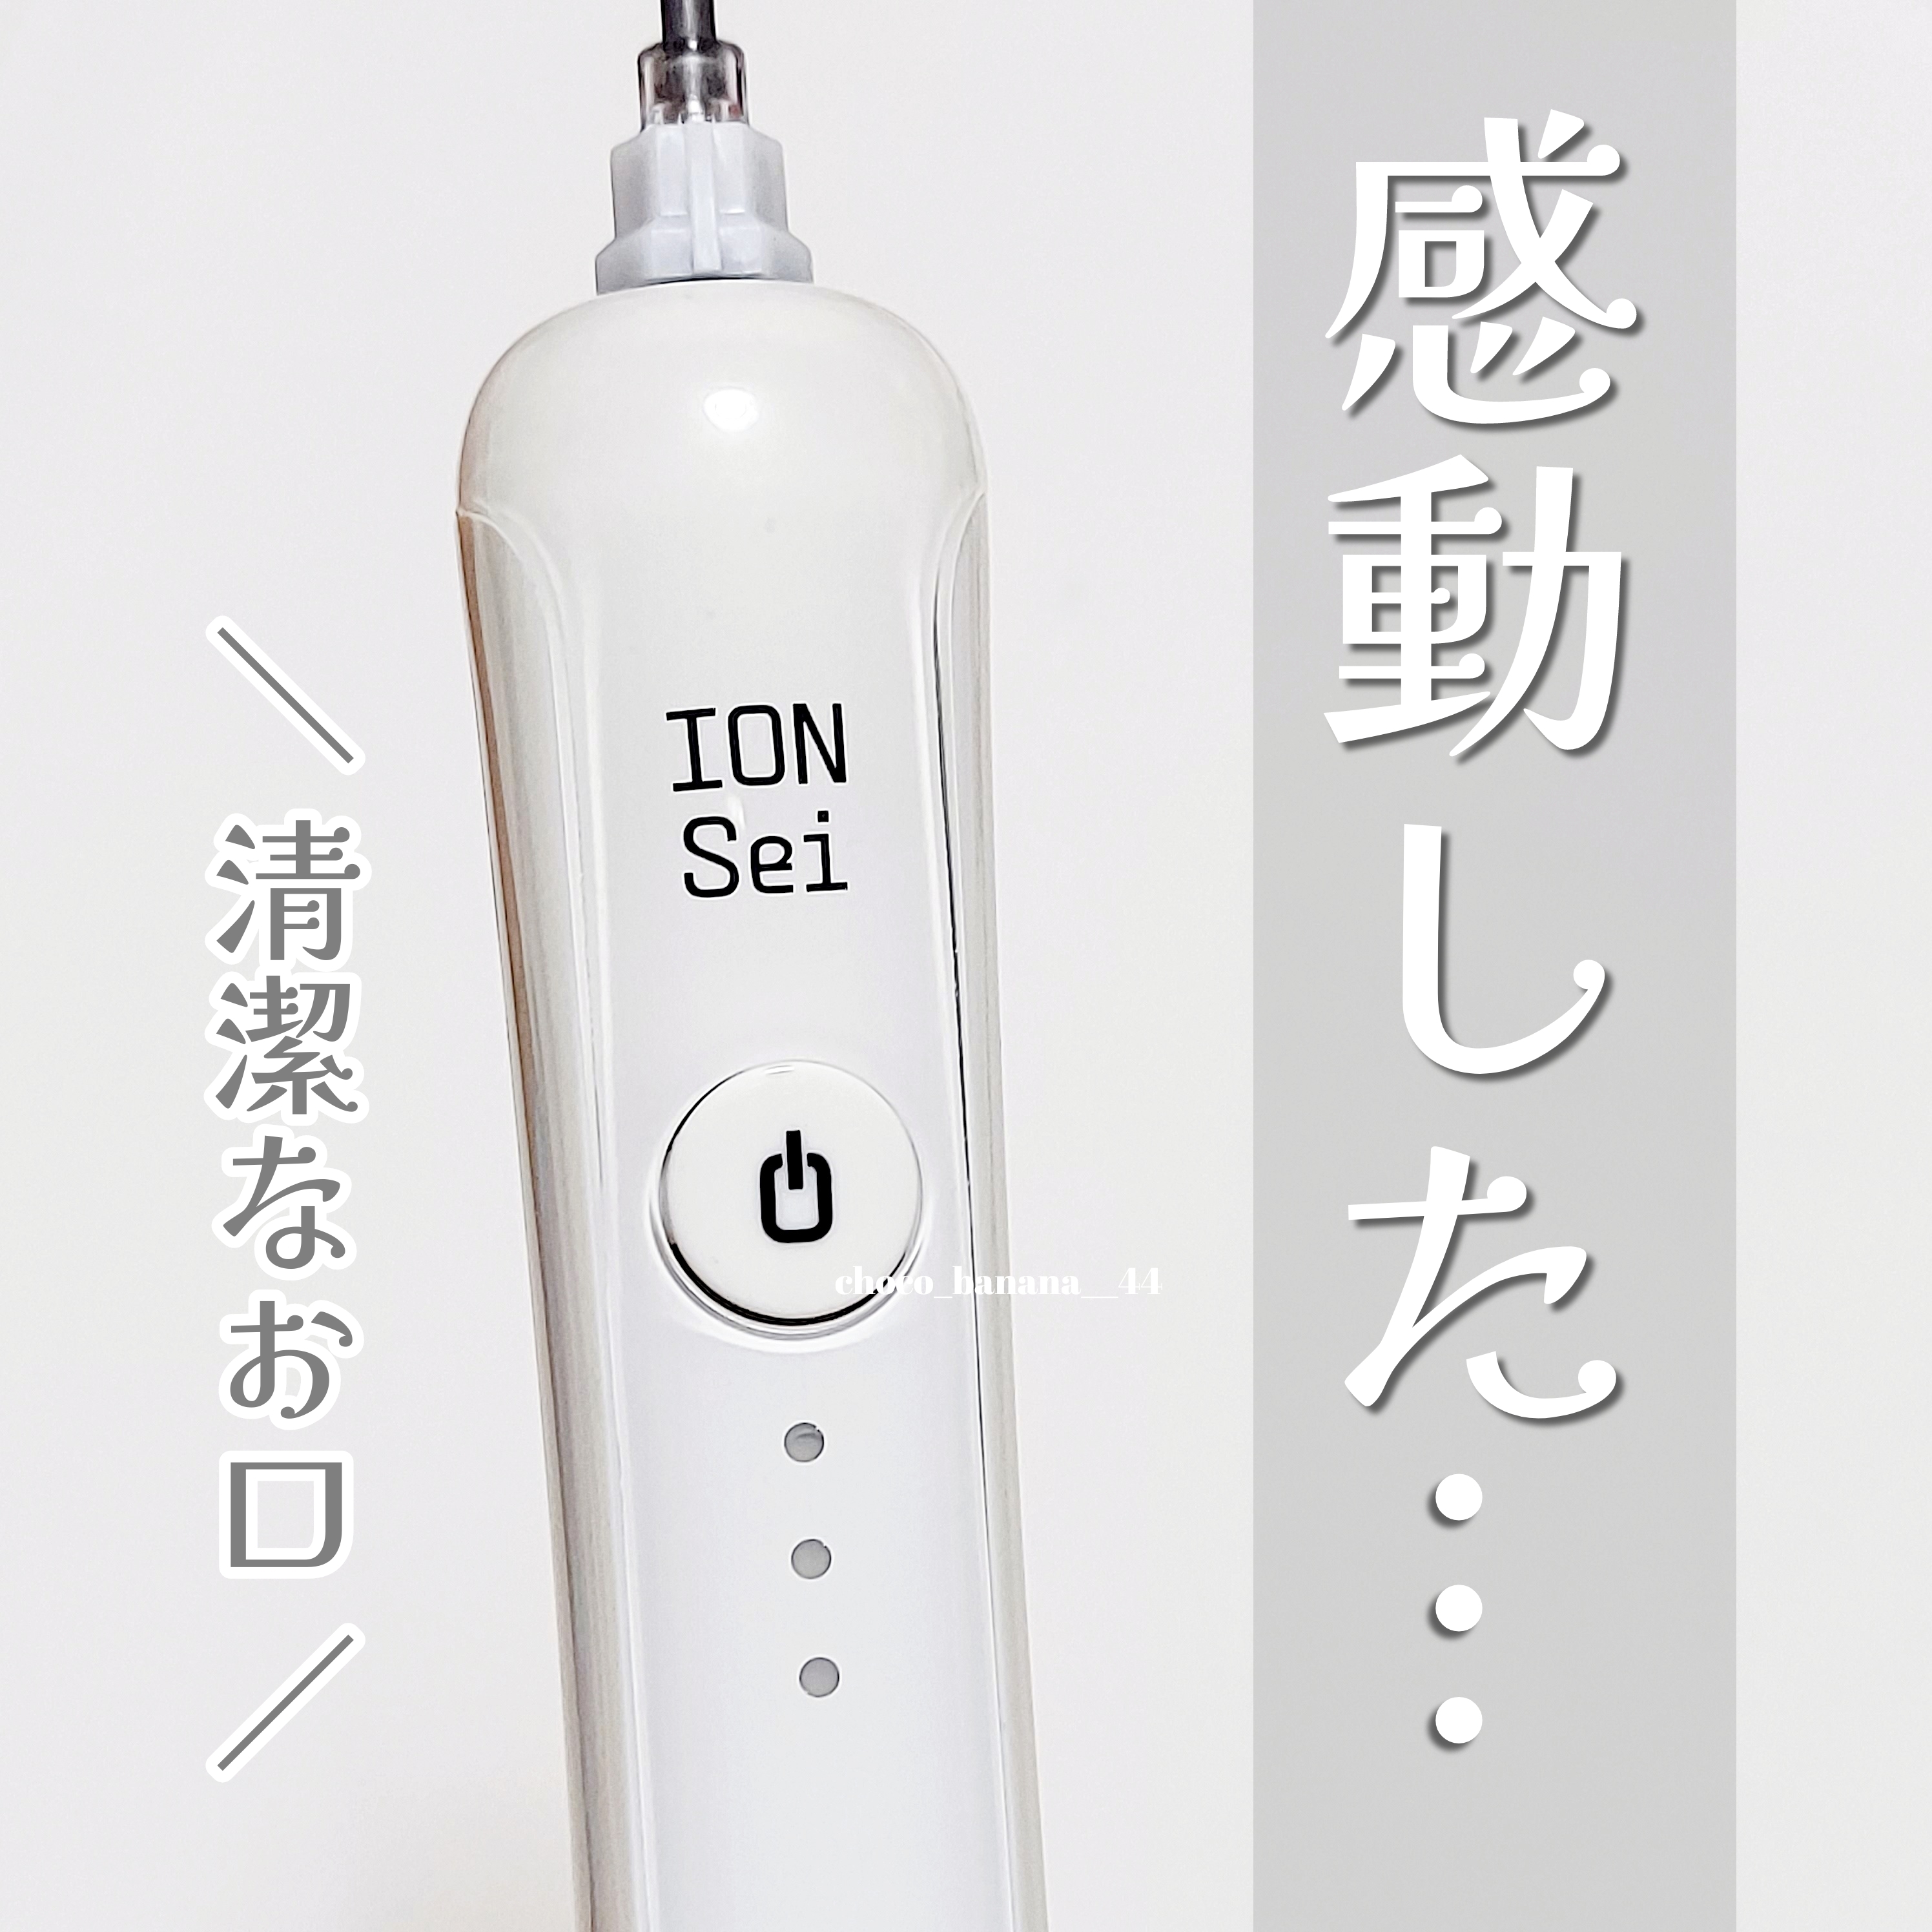 ION-Sei
電動歯ブラシの良い点・メリットに関するししさんの口コミ画像1